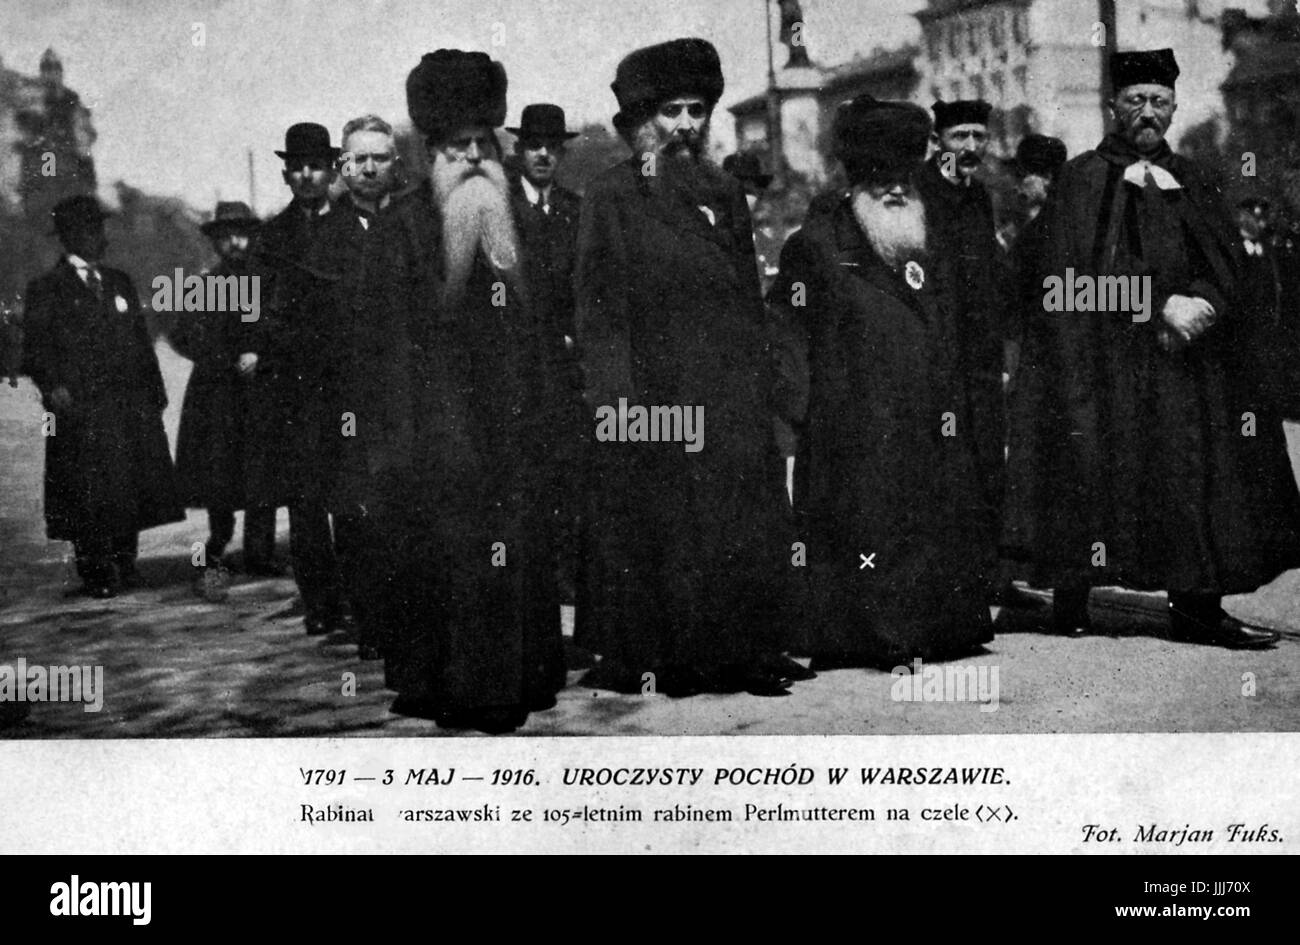 Rabbi Perlmutter ha chi è 105 che portano i rabbini di Varsavia 3 maggio 1916. Foto di Marjan Fuks. La didascalia recita "Uroczysty Pochod w Warszawie'. (Festosa Marzo a Varsavia) Foto Stock